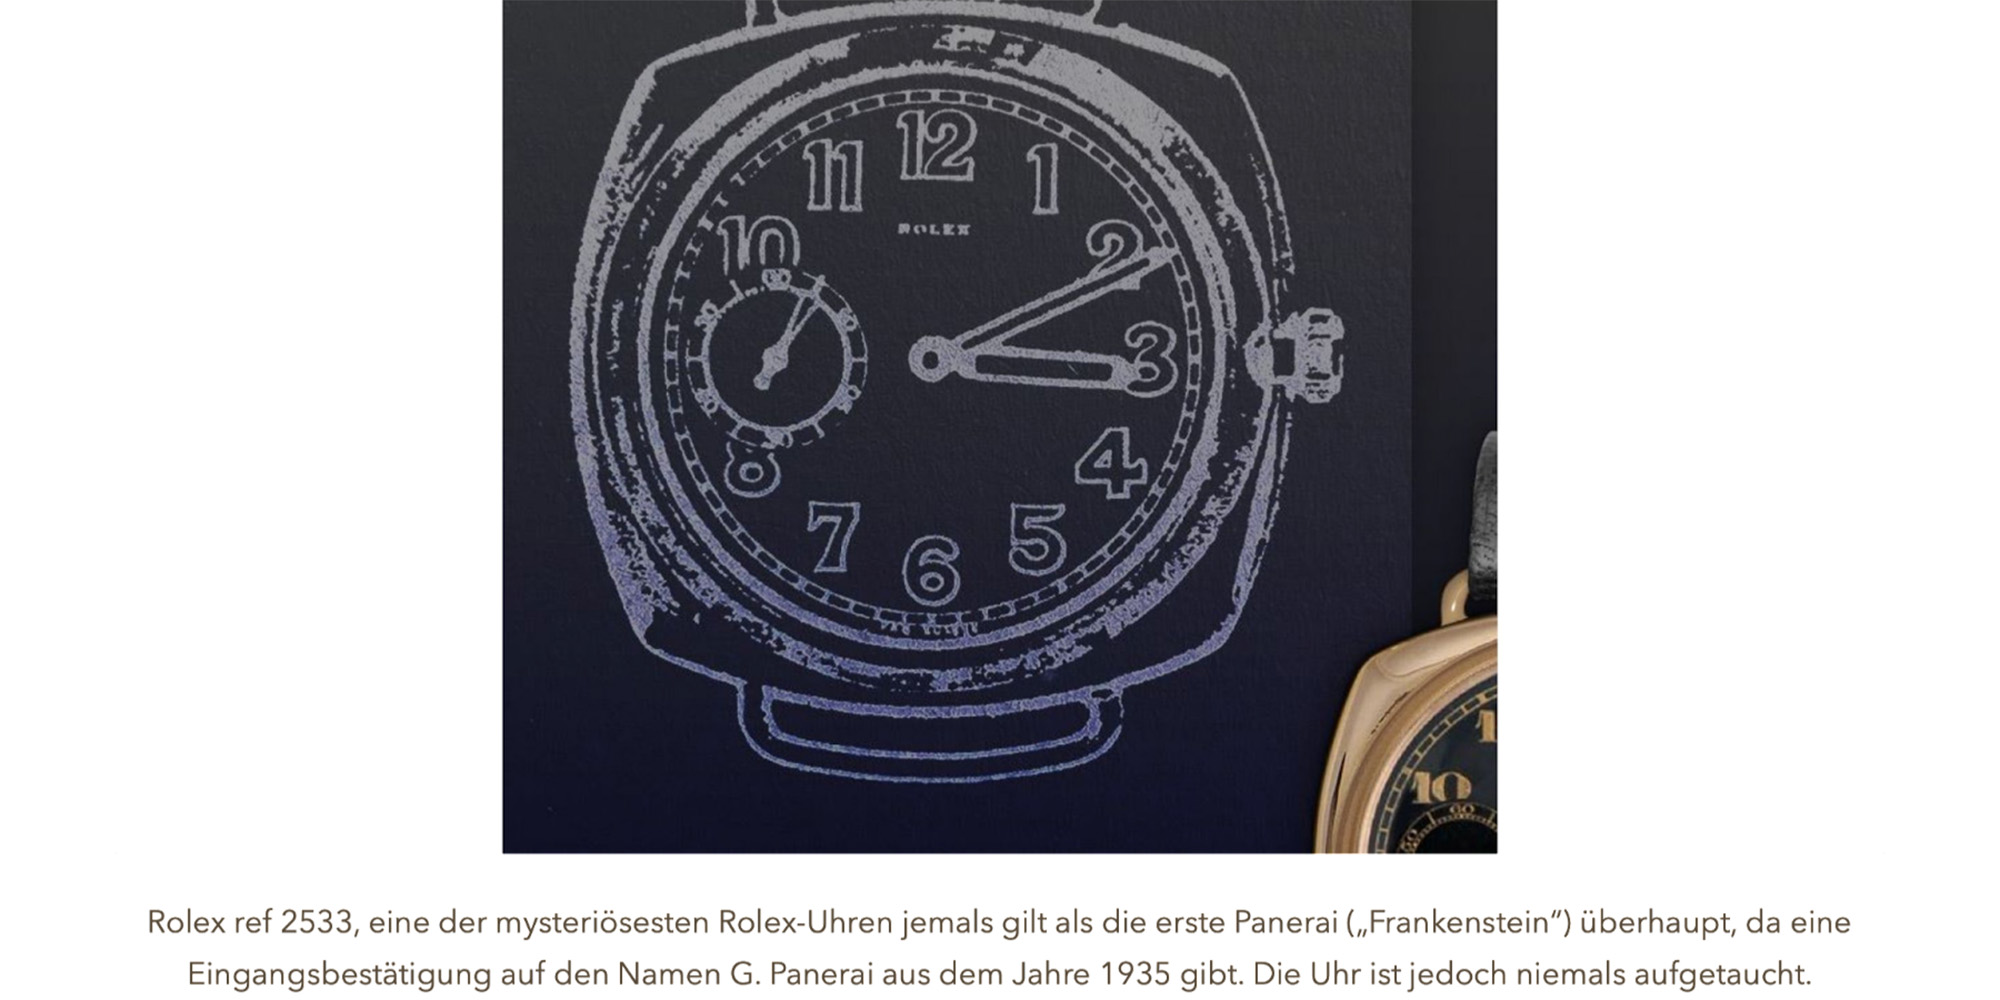 Rolex ref 2533, eine der mysteriösesten Rolex-Uhren jemals gilt als die erste Panerai („Frankenstein") überhaupt, da eine Eingangsbestätigung auf den Namen G. Panerai aus dem Jahre 1 935 gibt. Die Uhr ist jedoch niemals aufgetaucht.